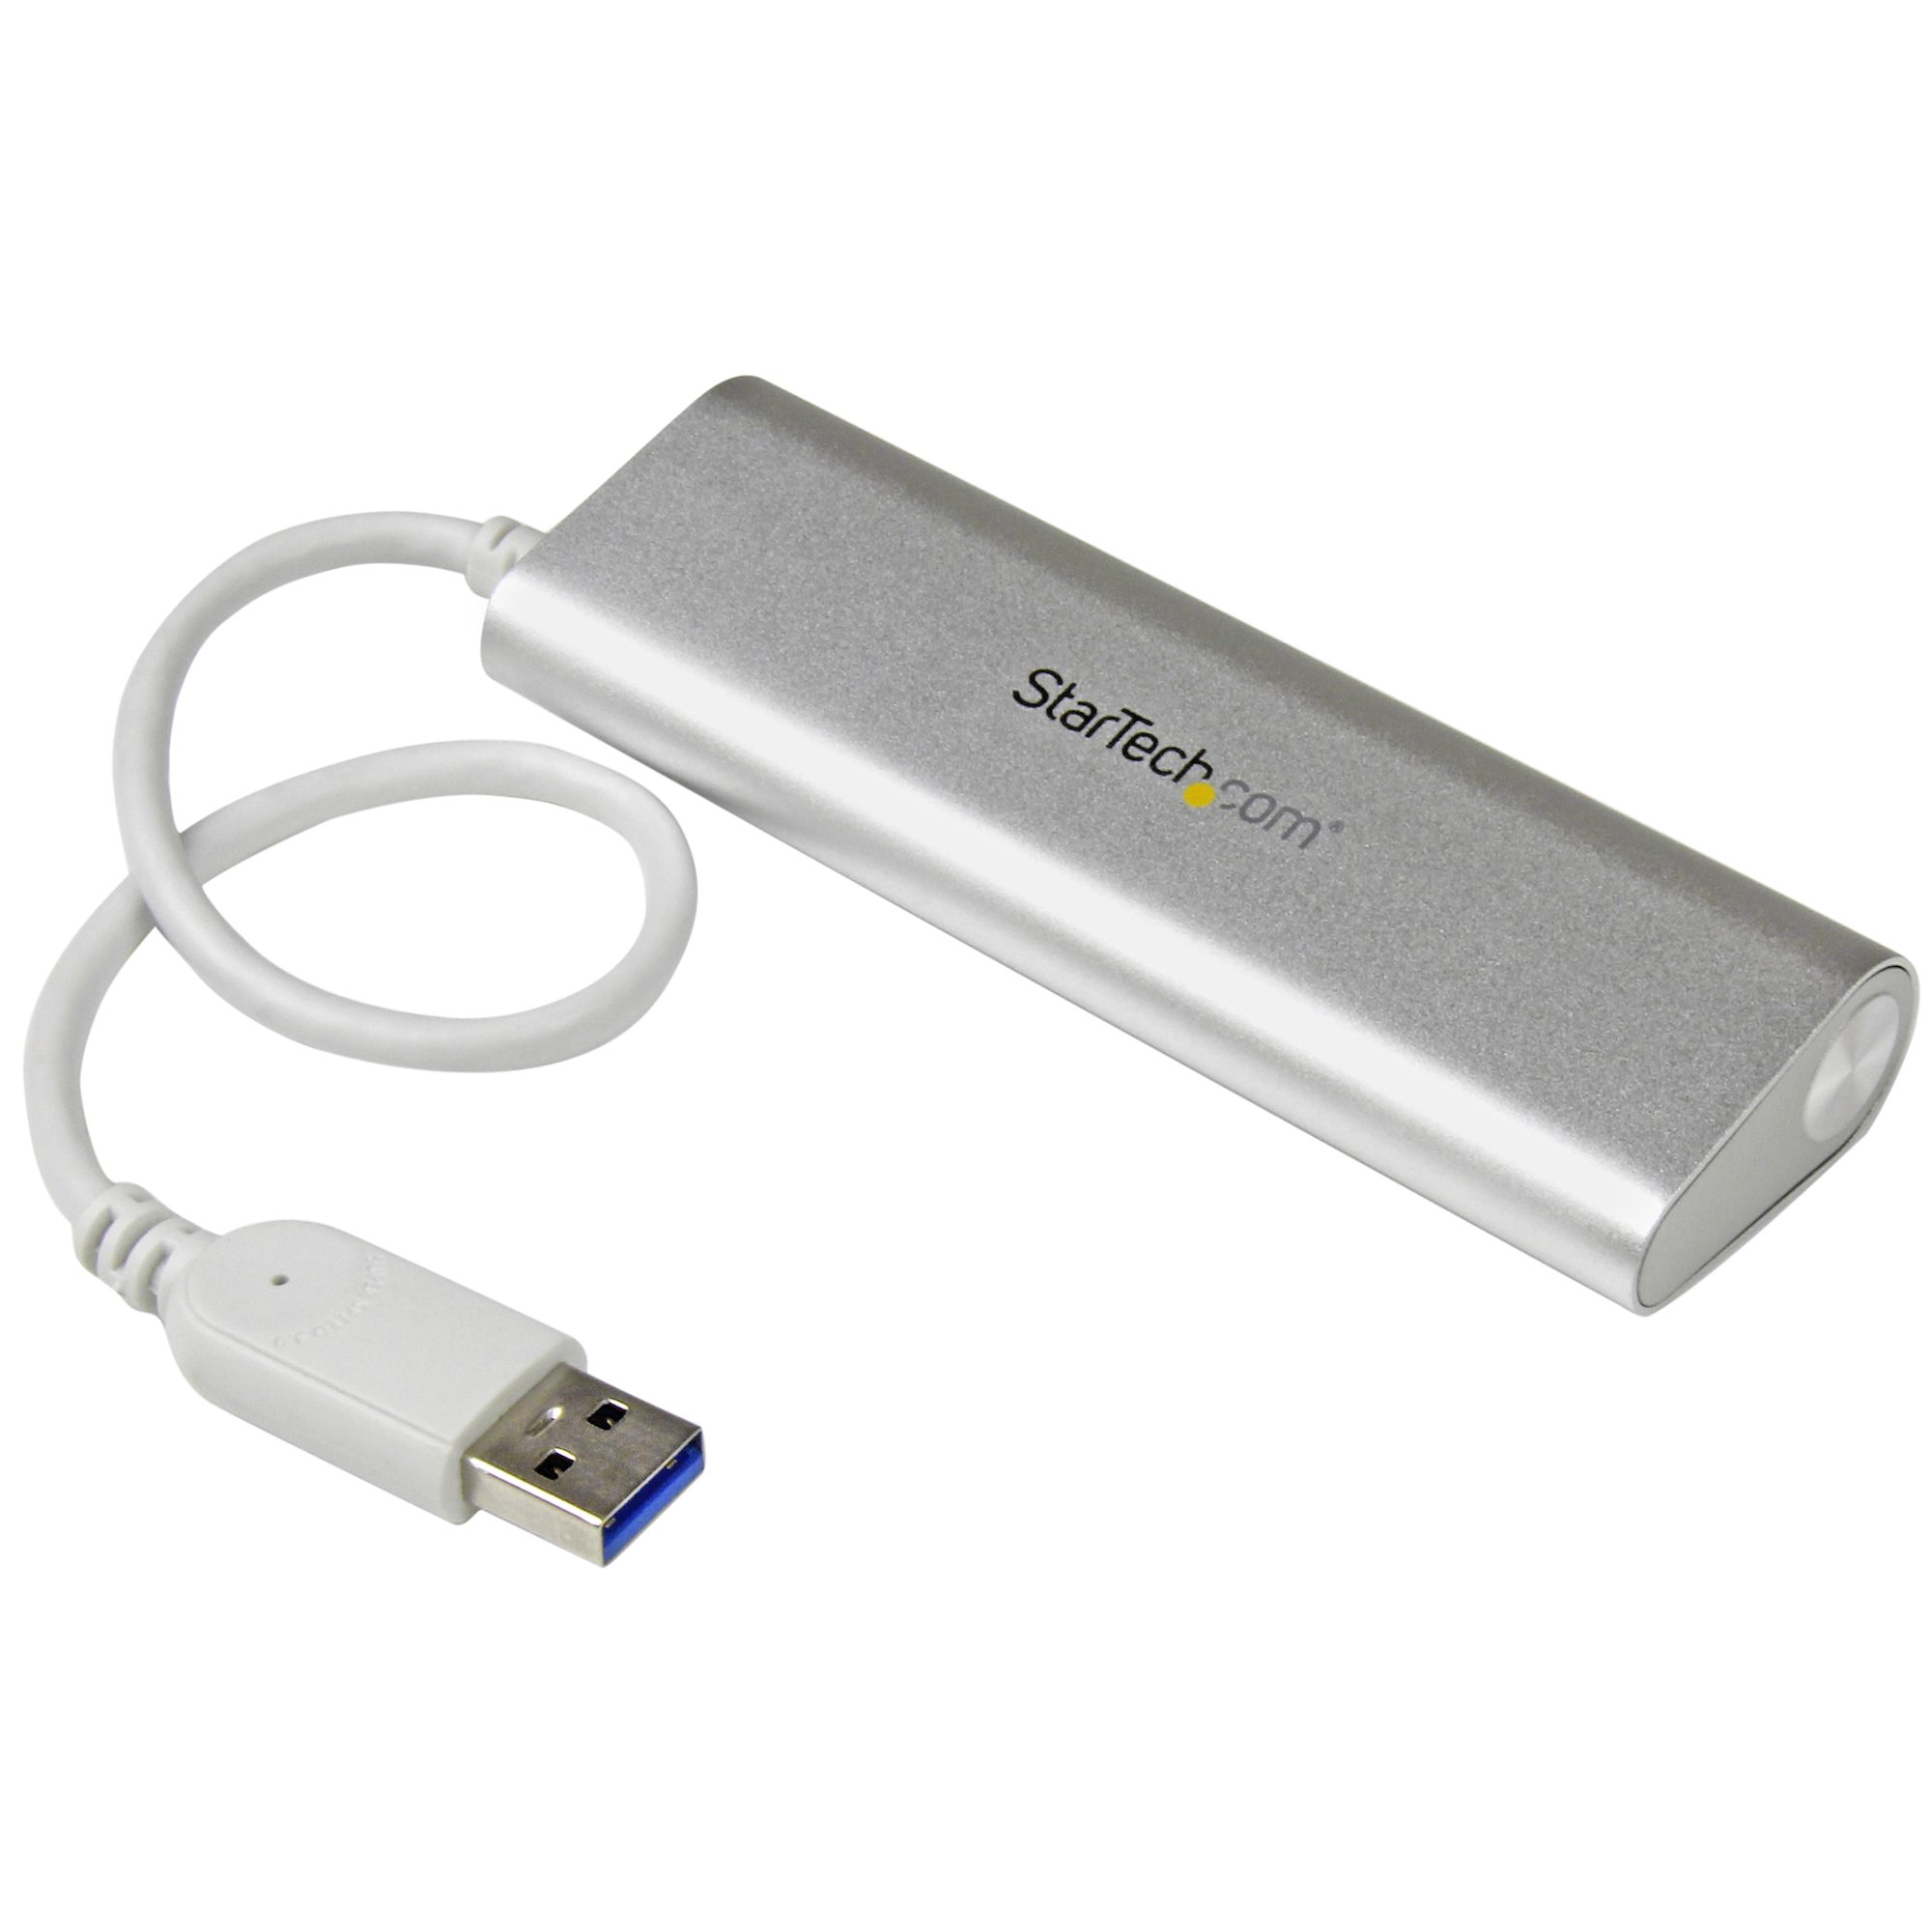 StarTech.com Hub USB de 4 Puertos - USB 3.0 de 5Gbps - Alimentado por el  Bus - Concentrador